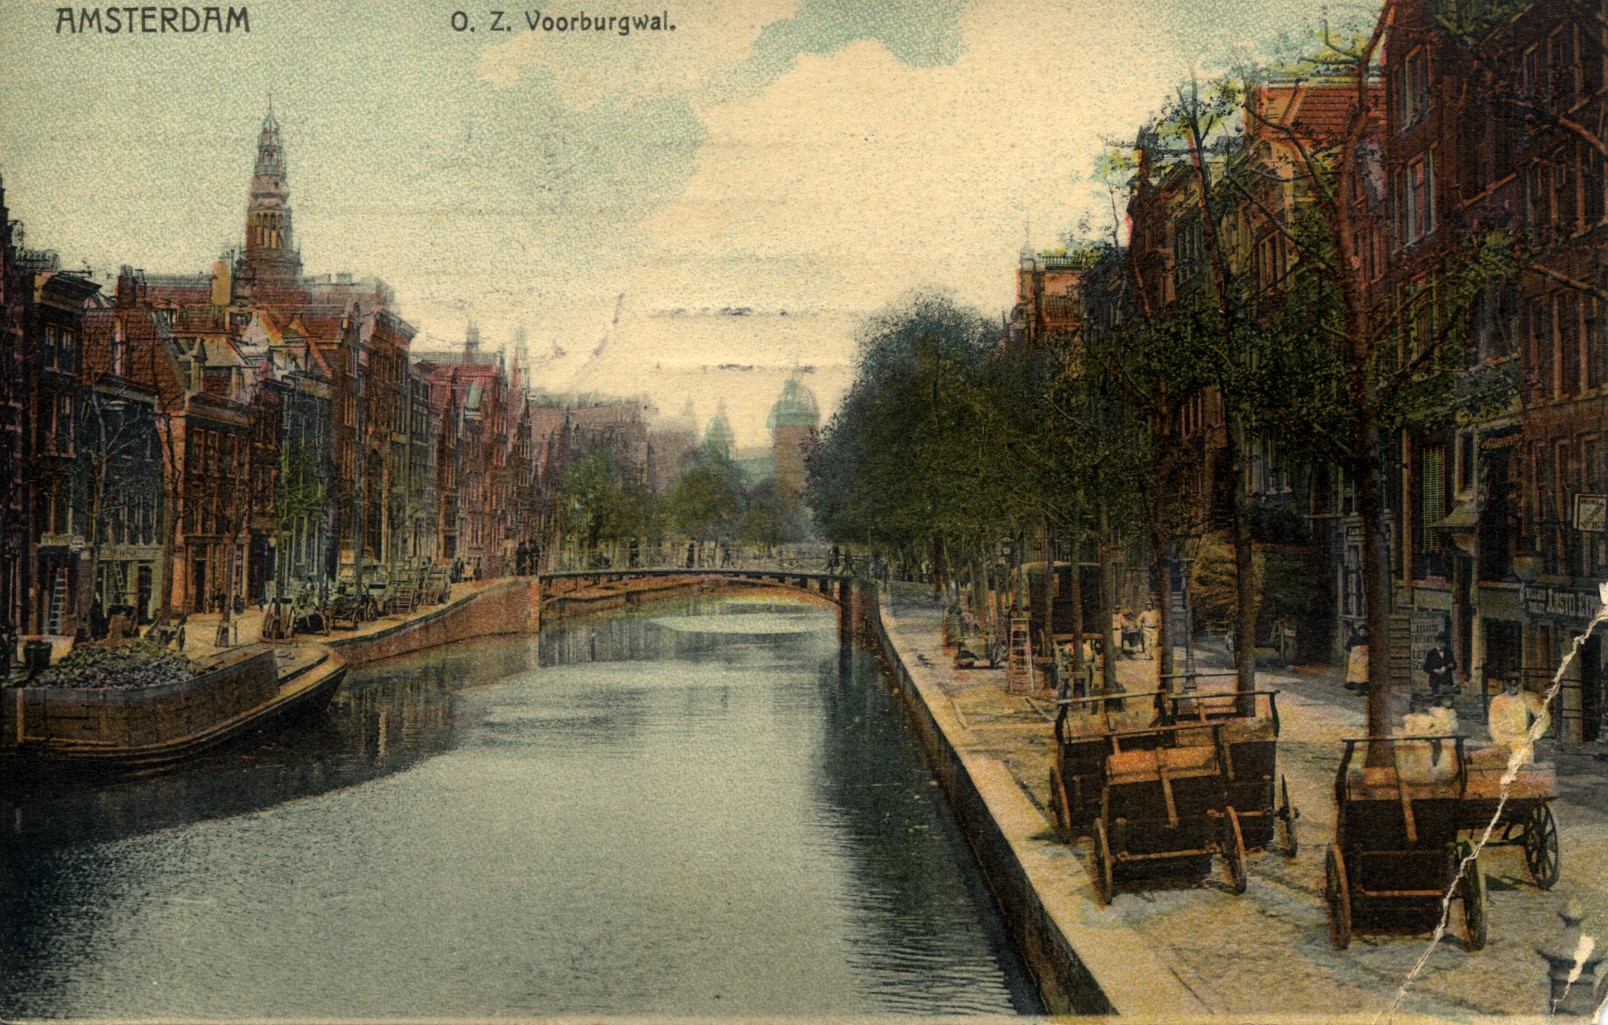 Amsterdam, 1908: Oudezijds Voorburgwal